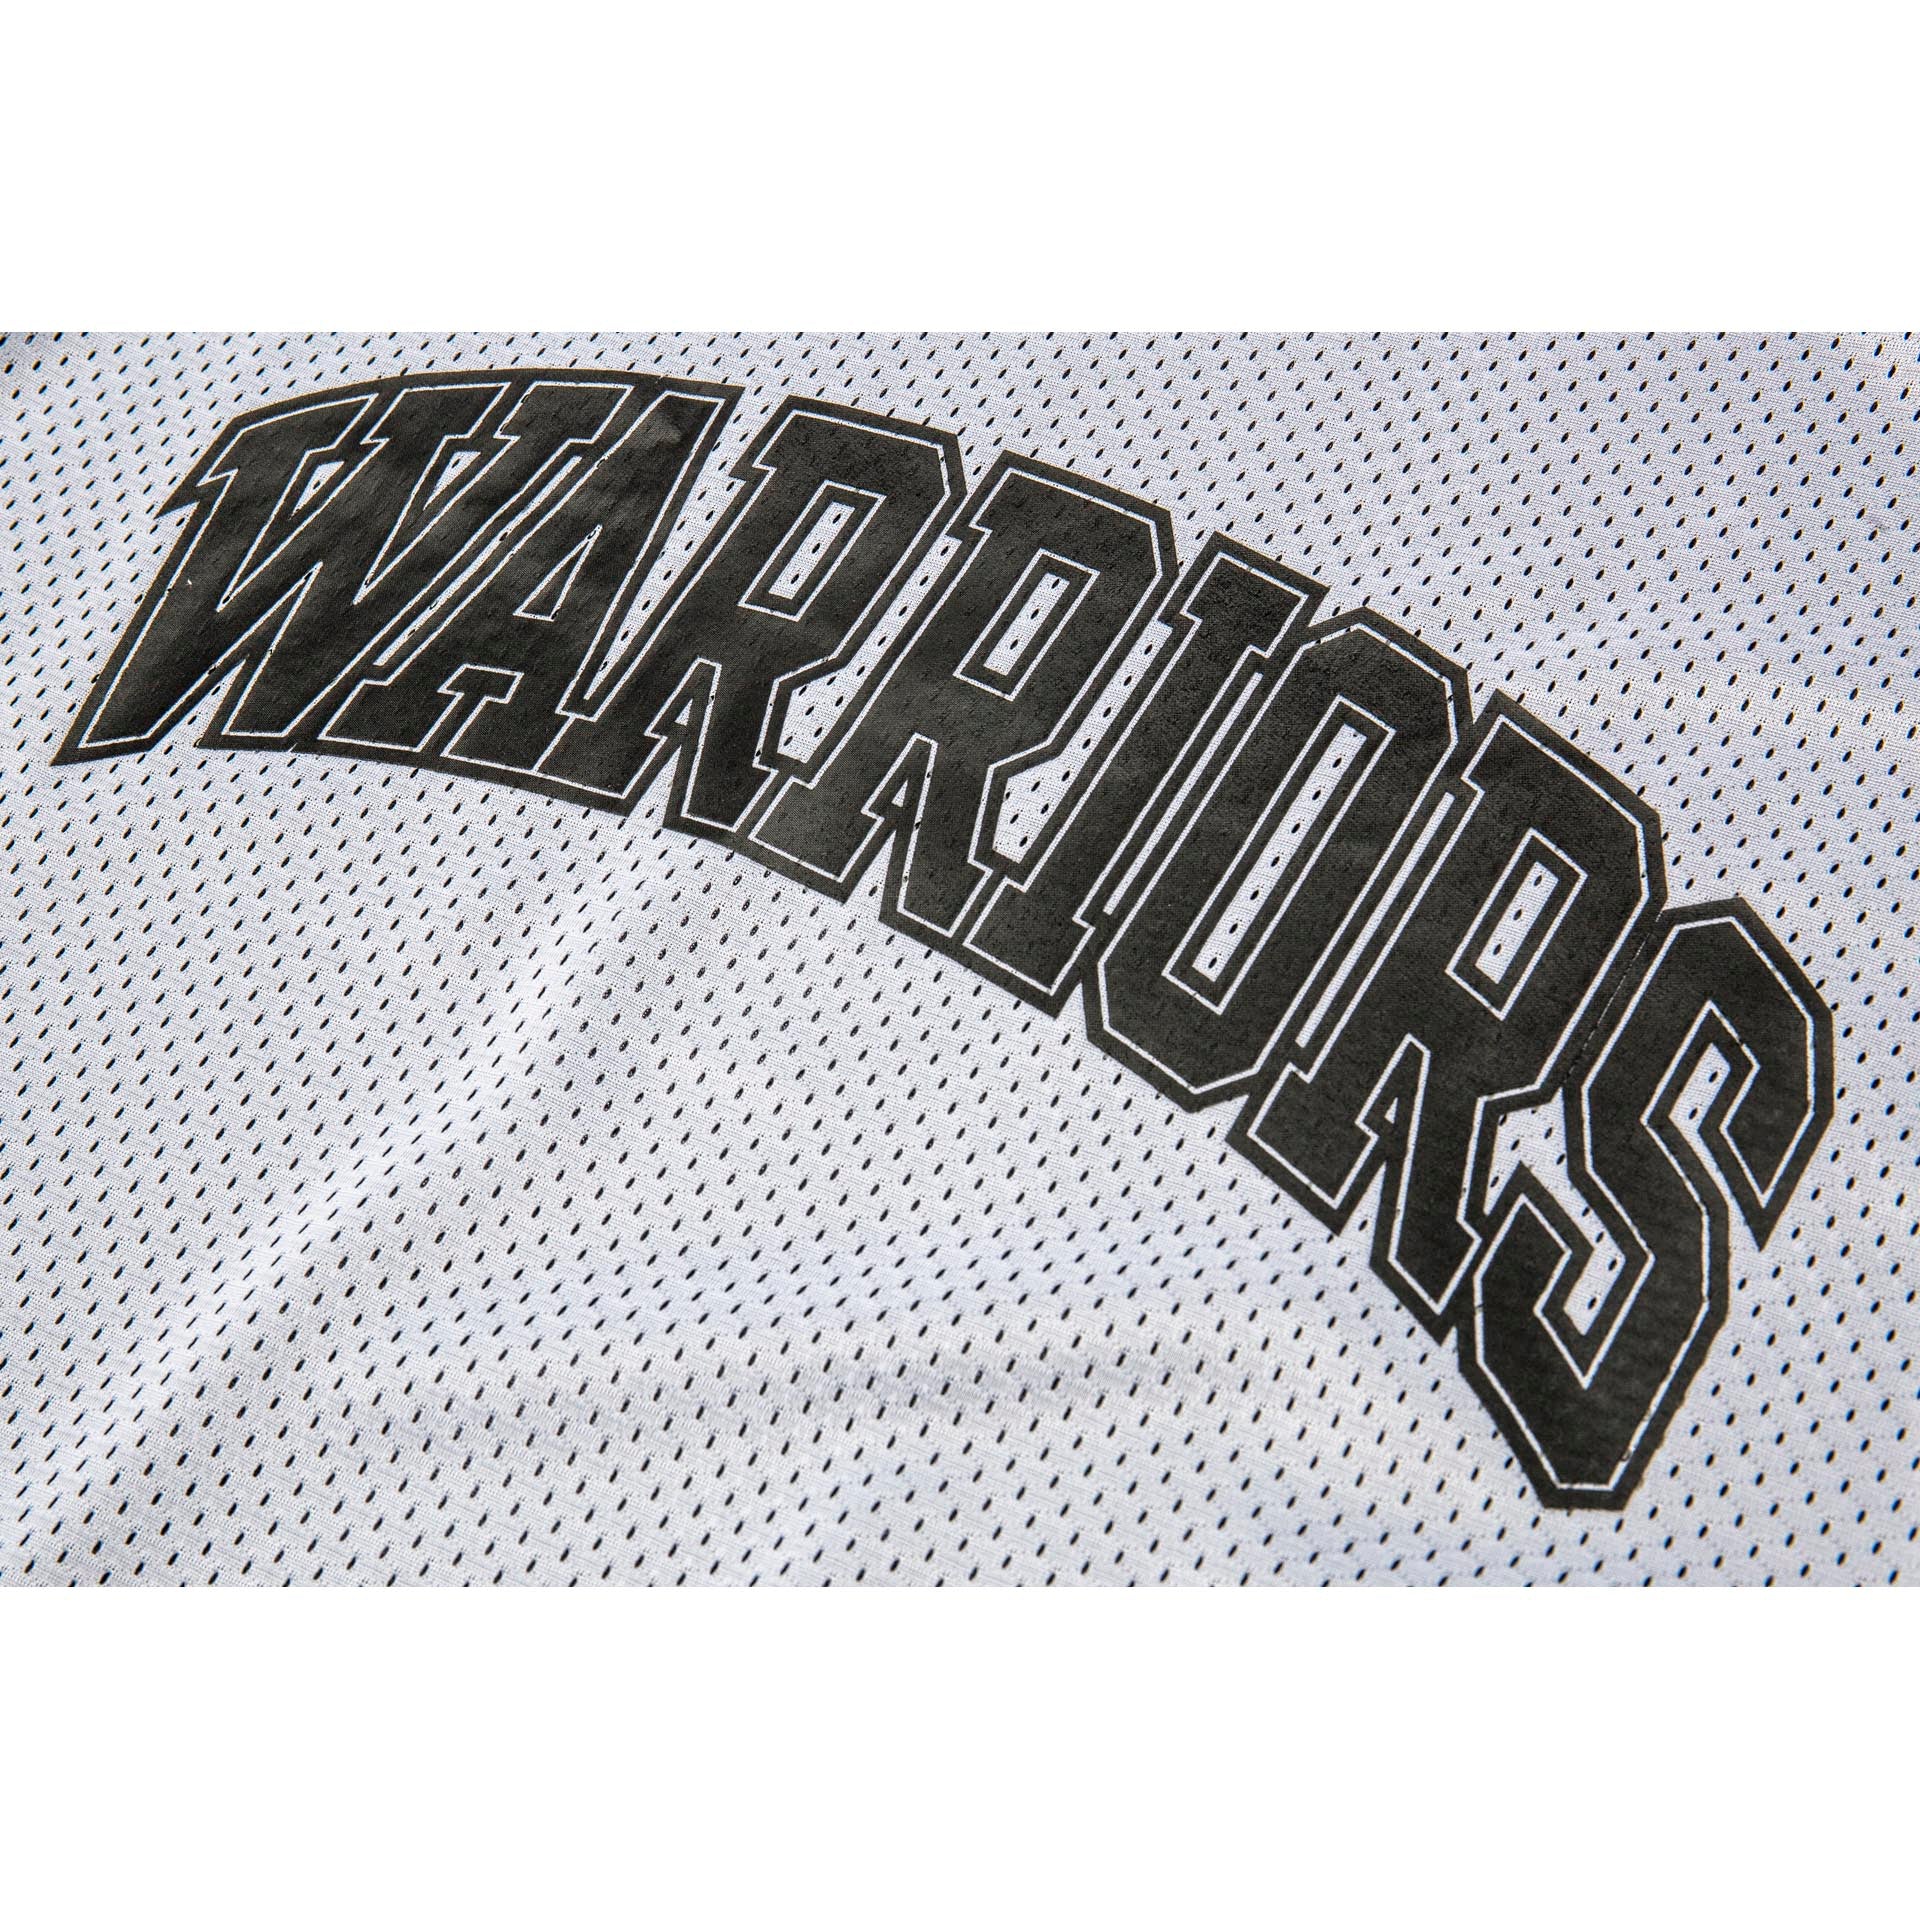 Men's AAPE x Mitchell & Ness White Golden State Warriors Hardwood Classics  BP Jersey T-Shirt